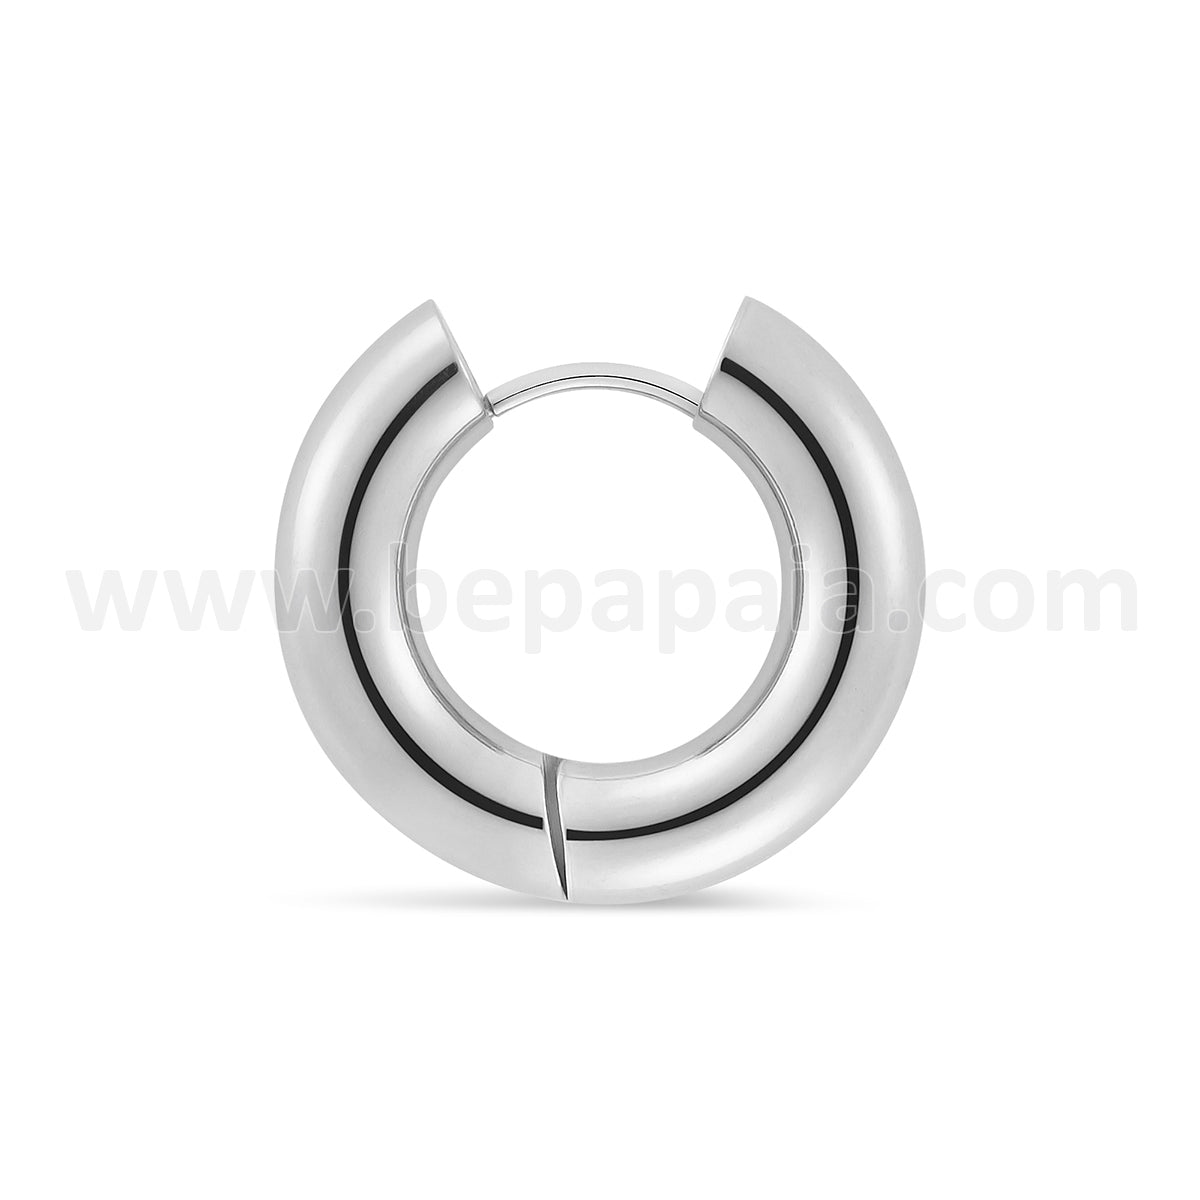 Stainless steel and black steel hoop earring 4 & 5 mm